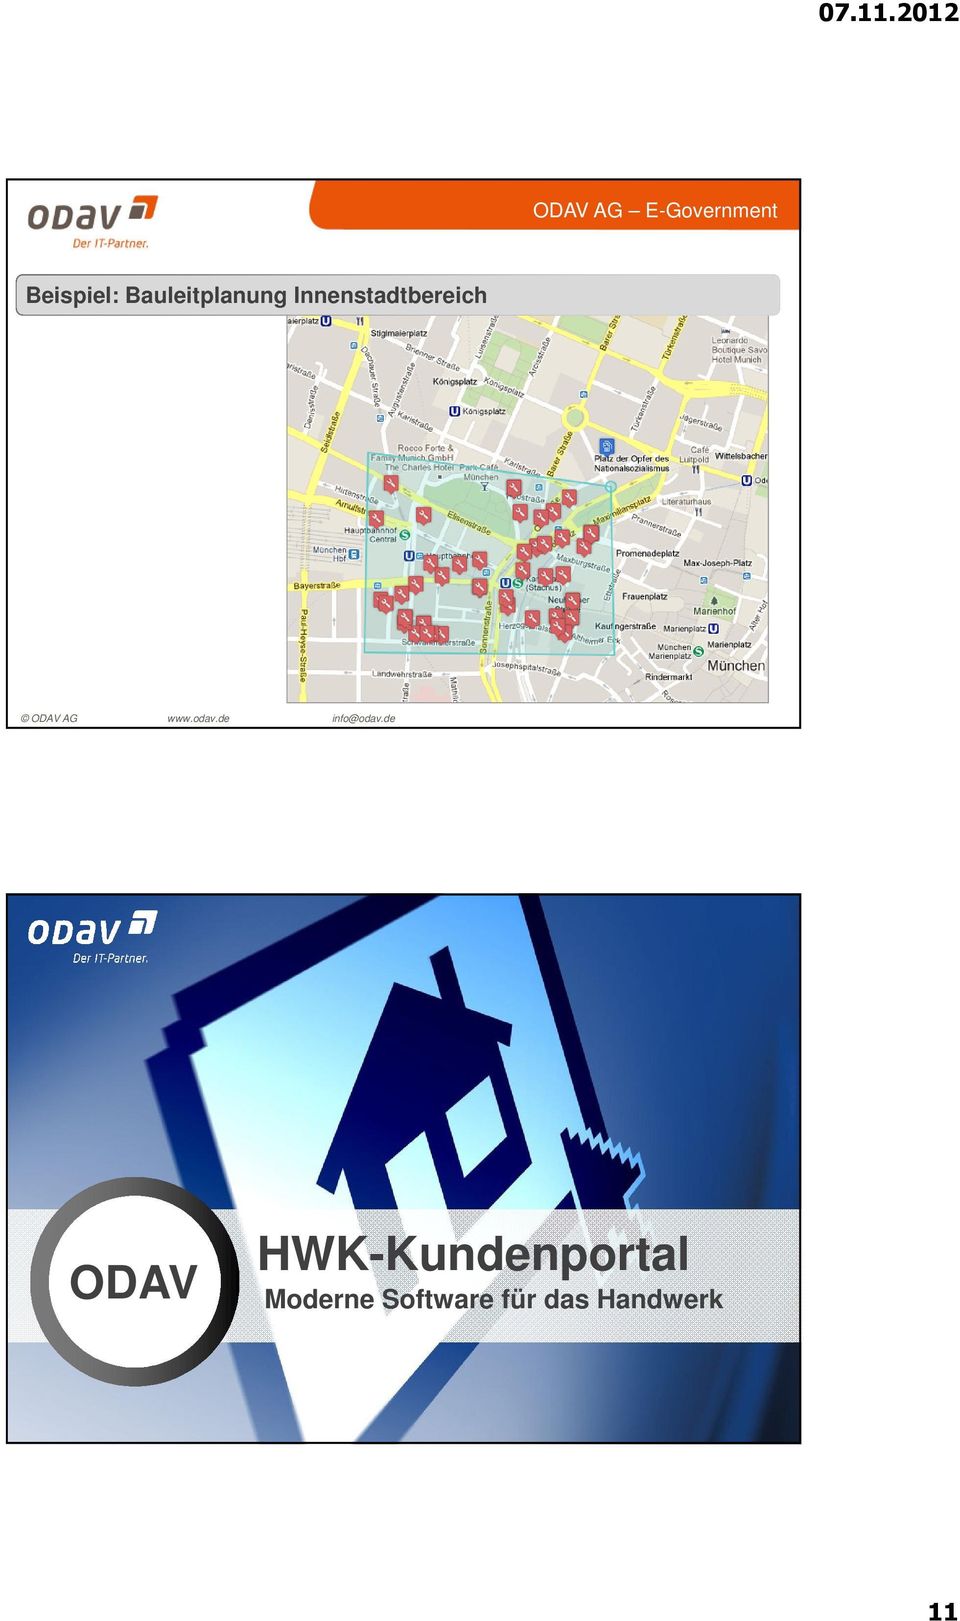 HWK-Kundenportal Moderne